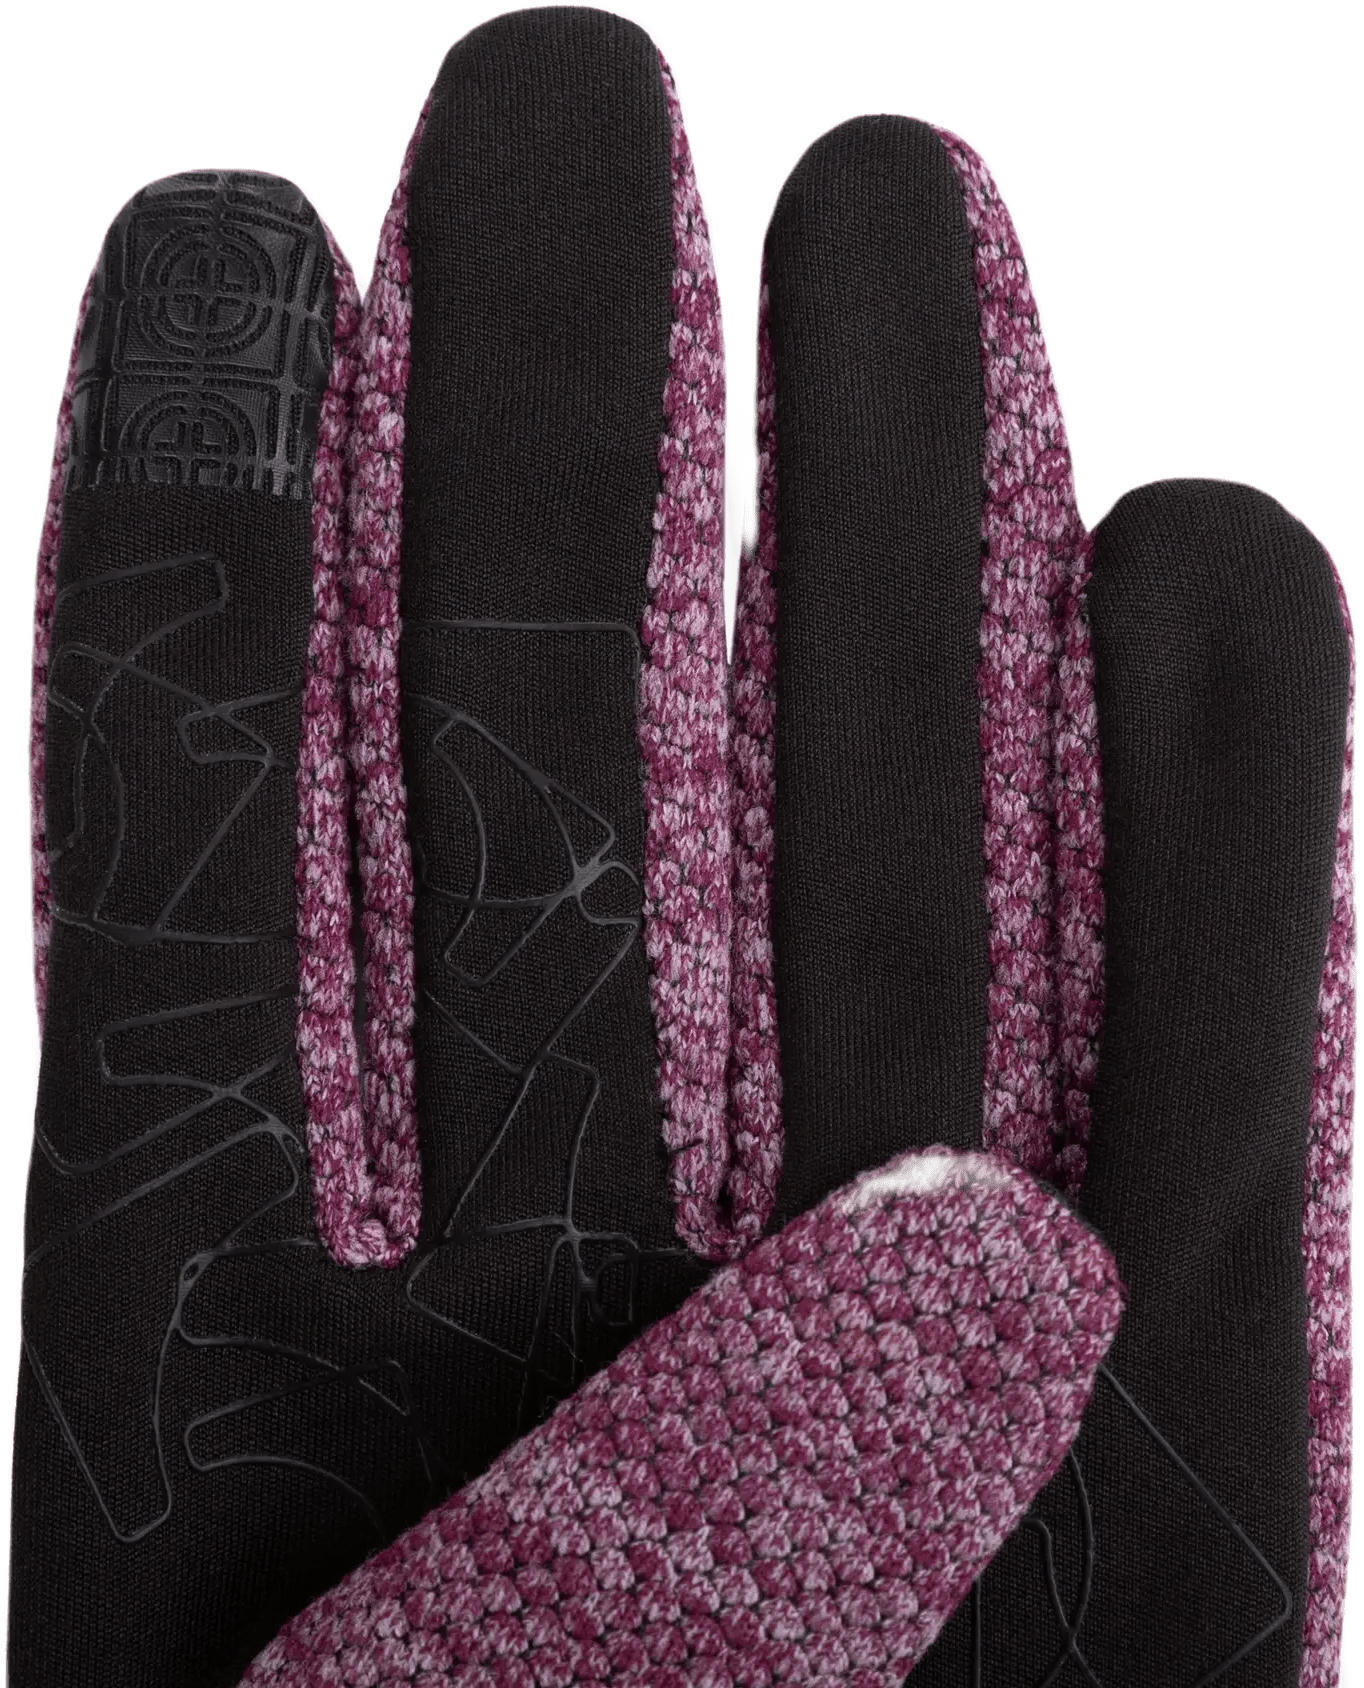 Перчатки Trekmates Harland Glove TM-006305 aubergine - M - фиолетовый/черный фото 2